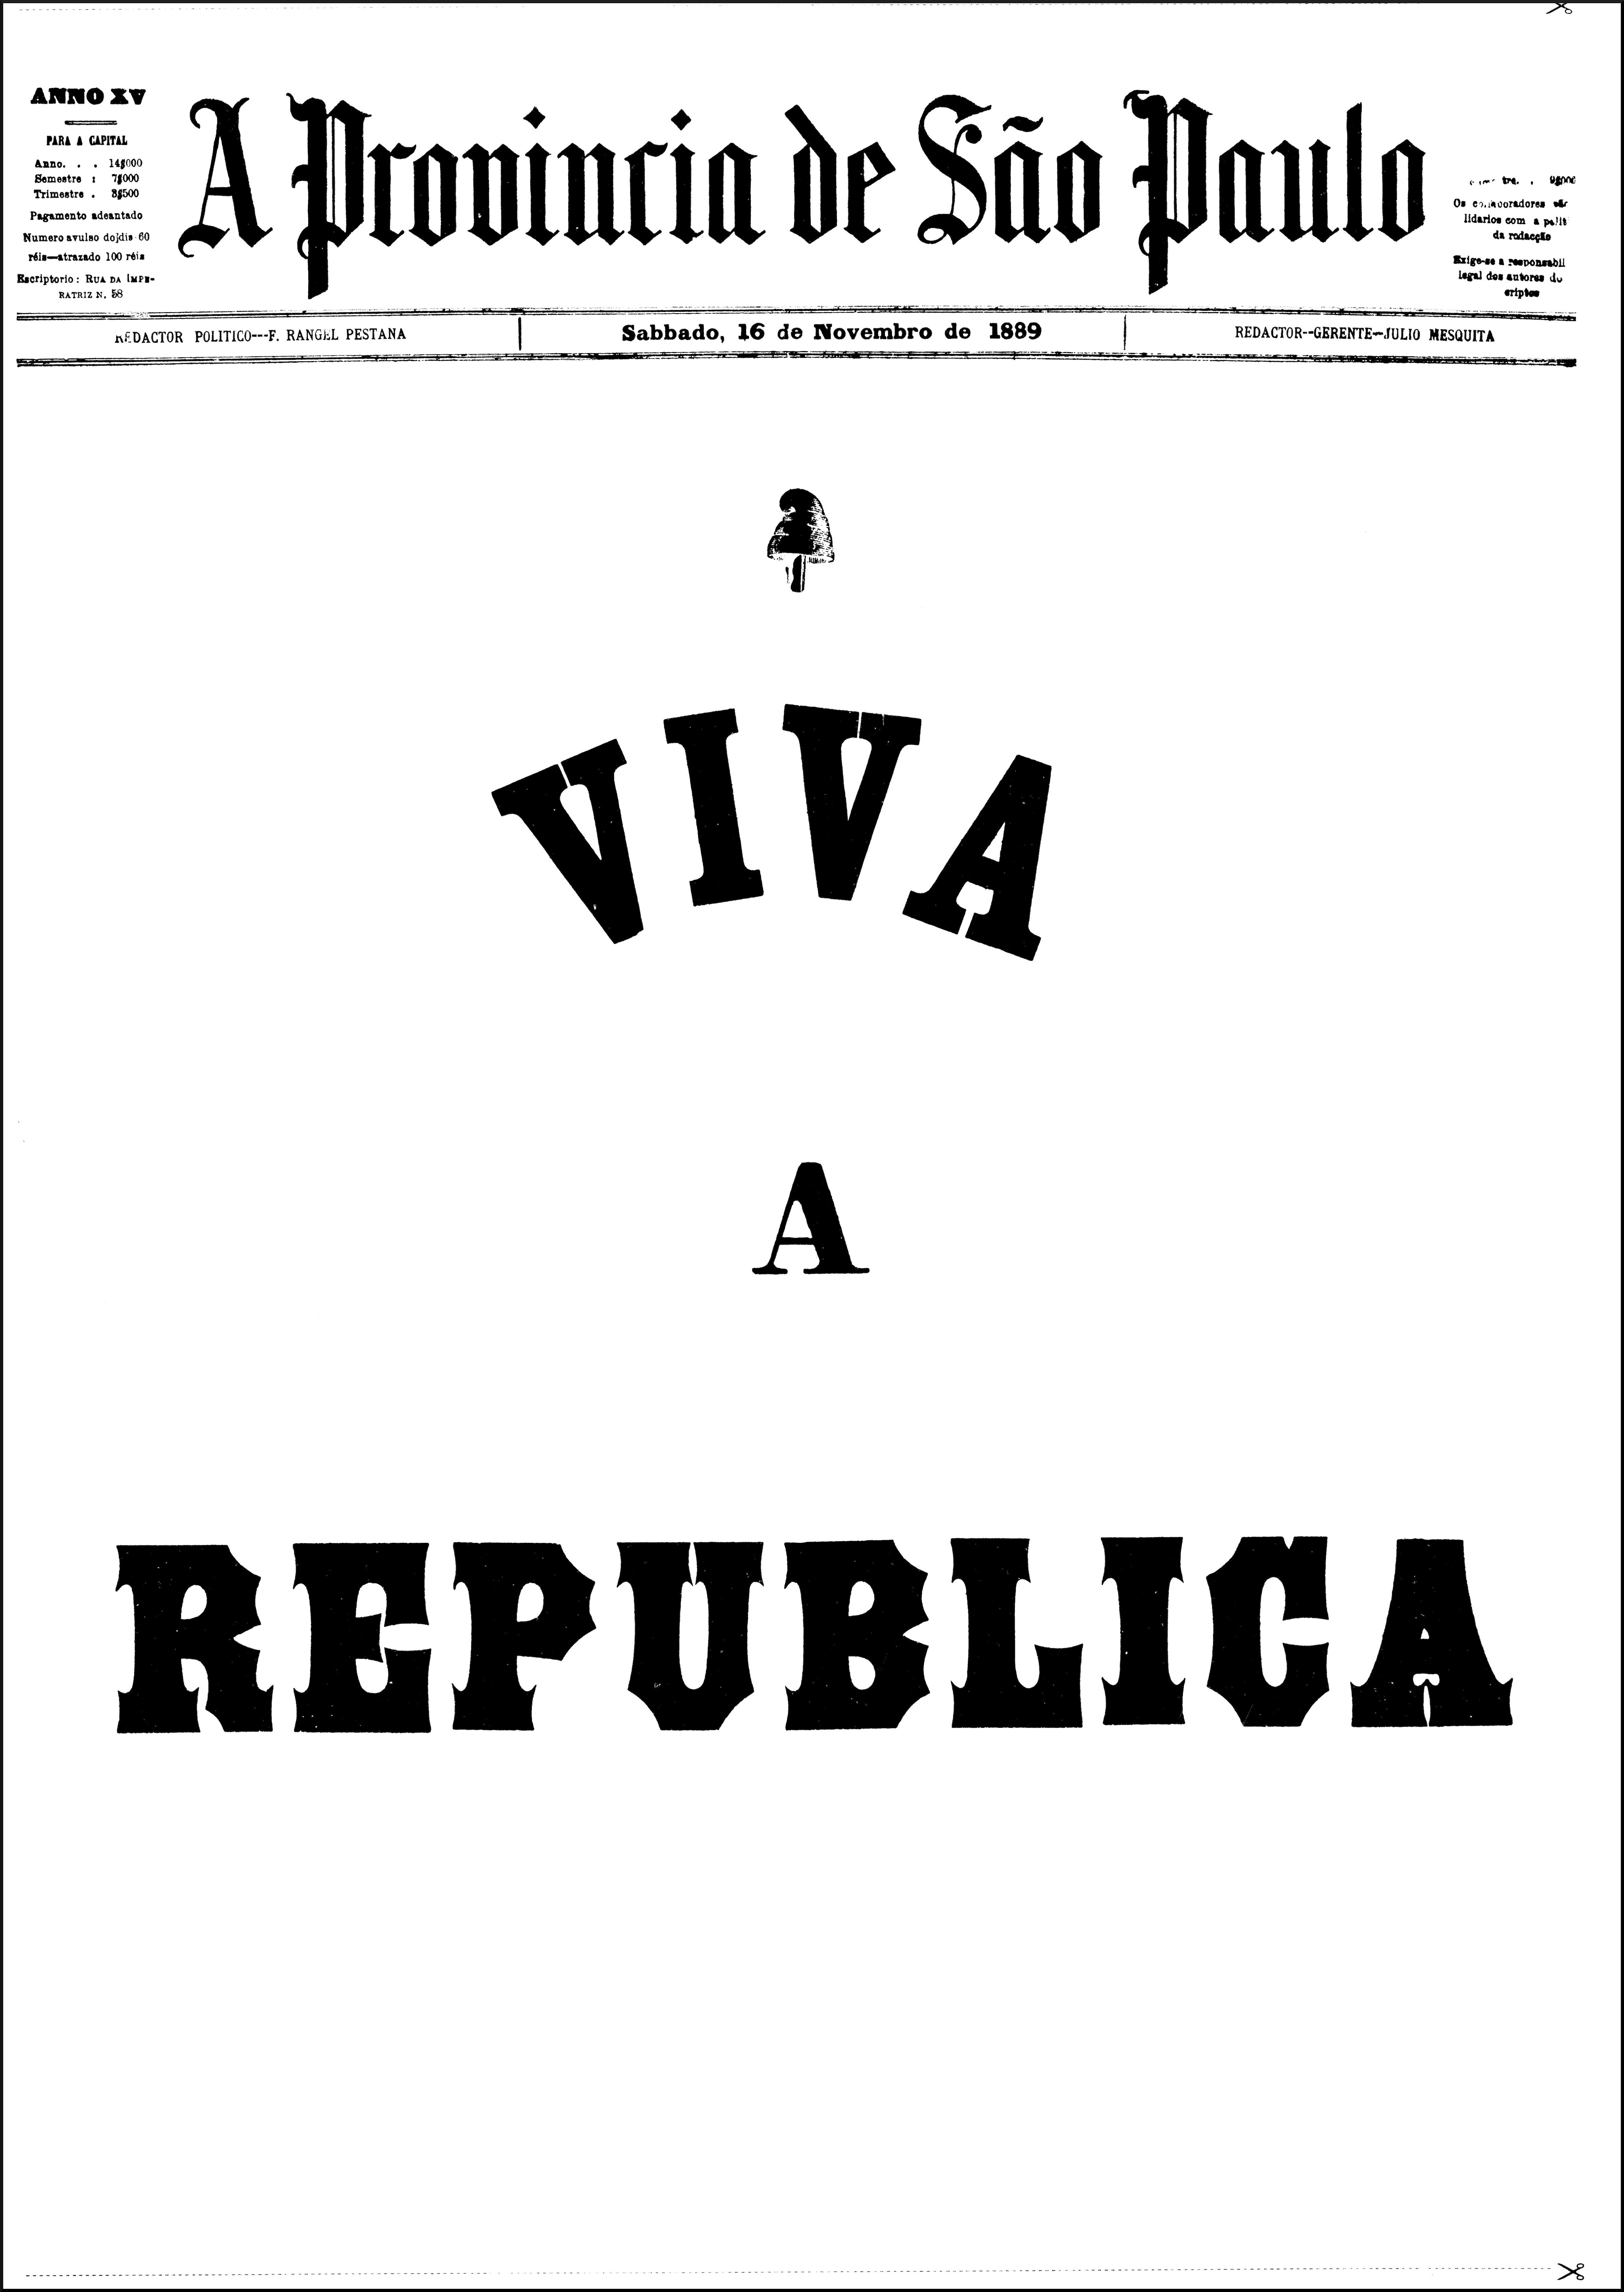 Resumo da Proclamação da República (15/11/1889) - História do Brasil -  Significados